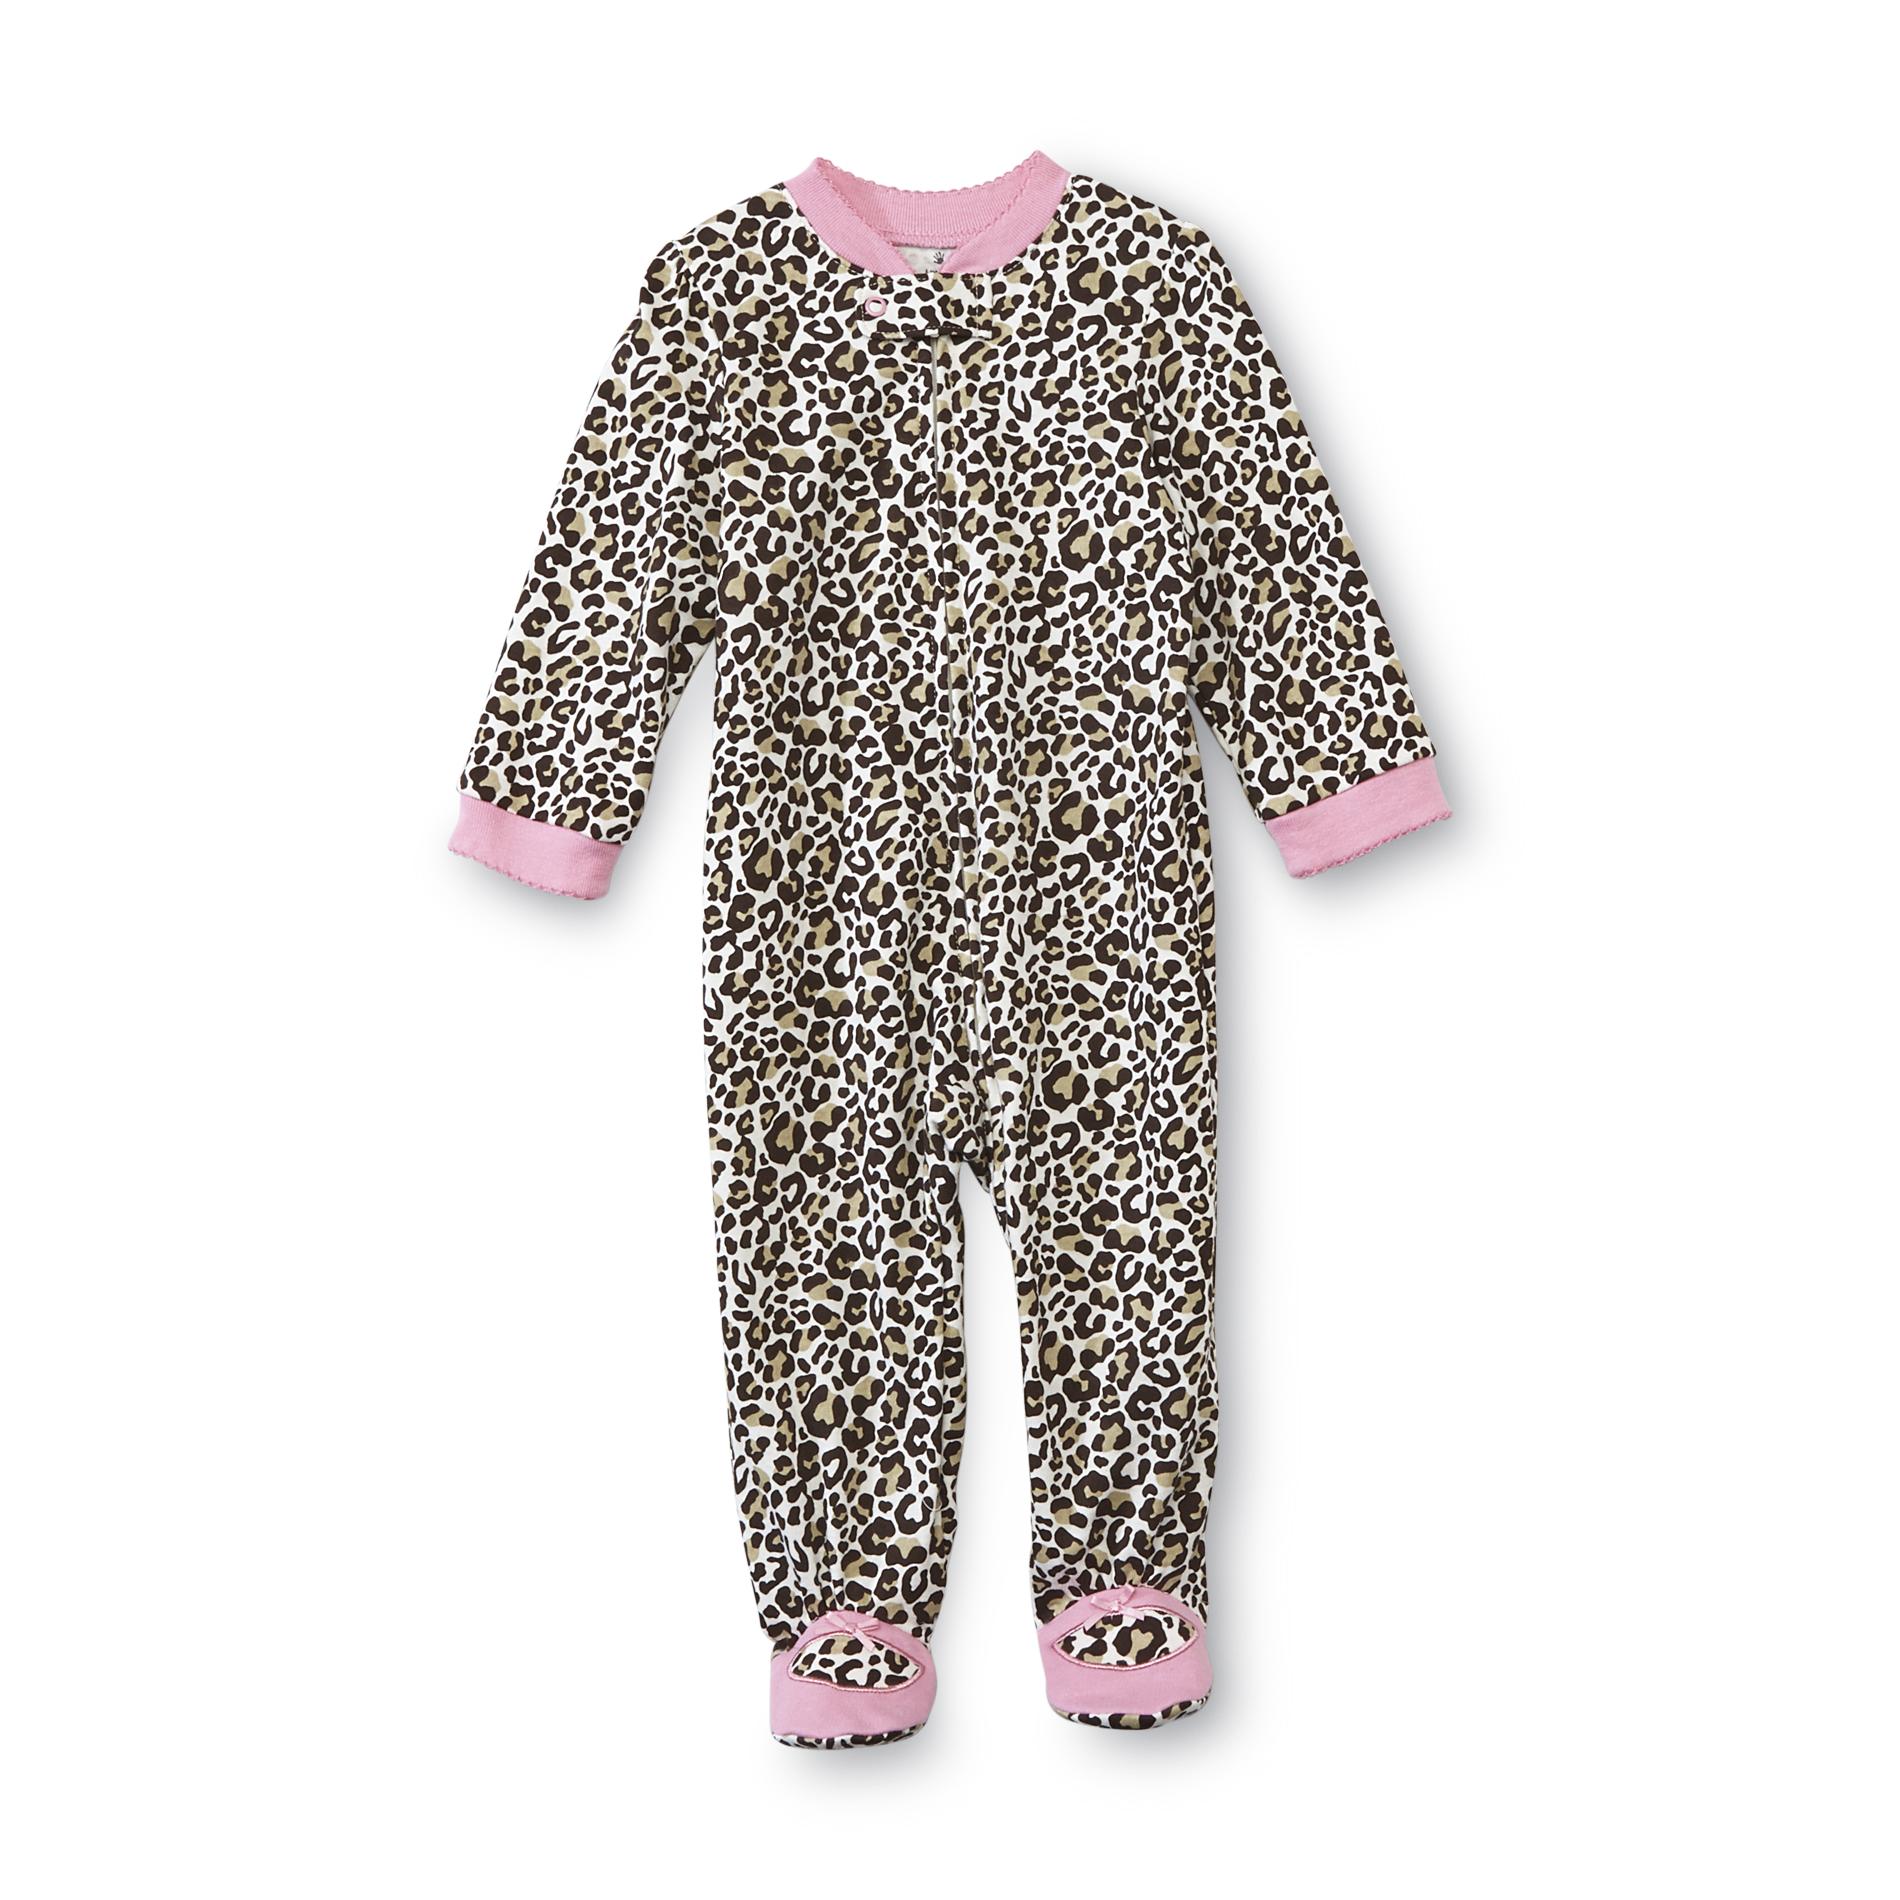 Small Wonders Newborn Girl's Knit Footed Sleeper - Leopard